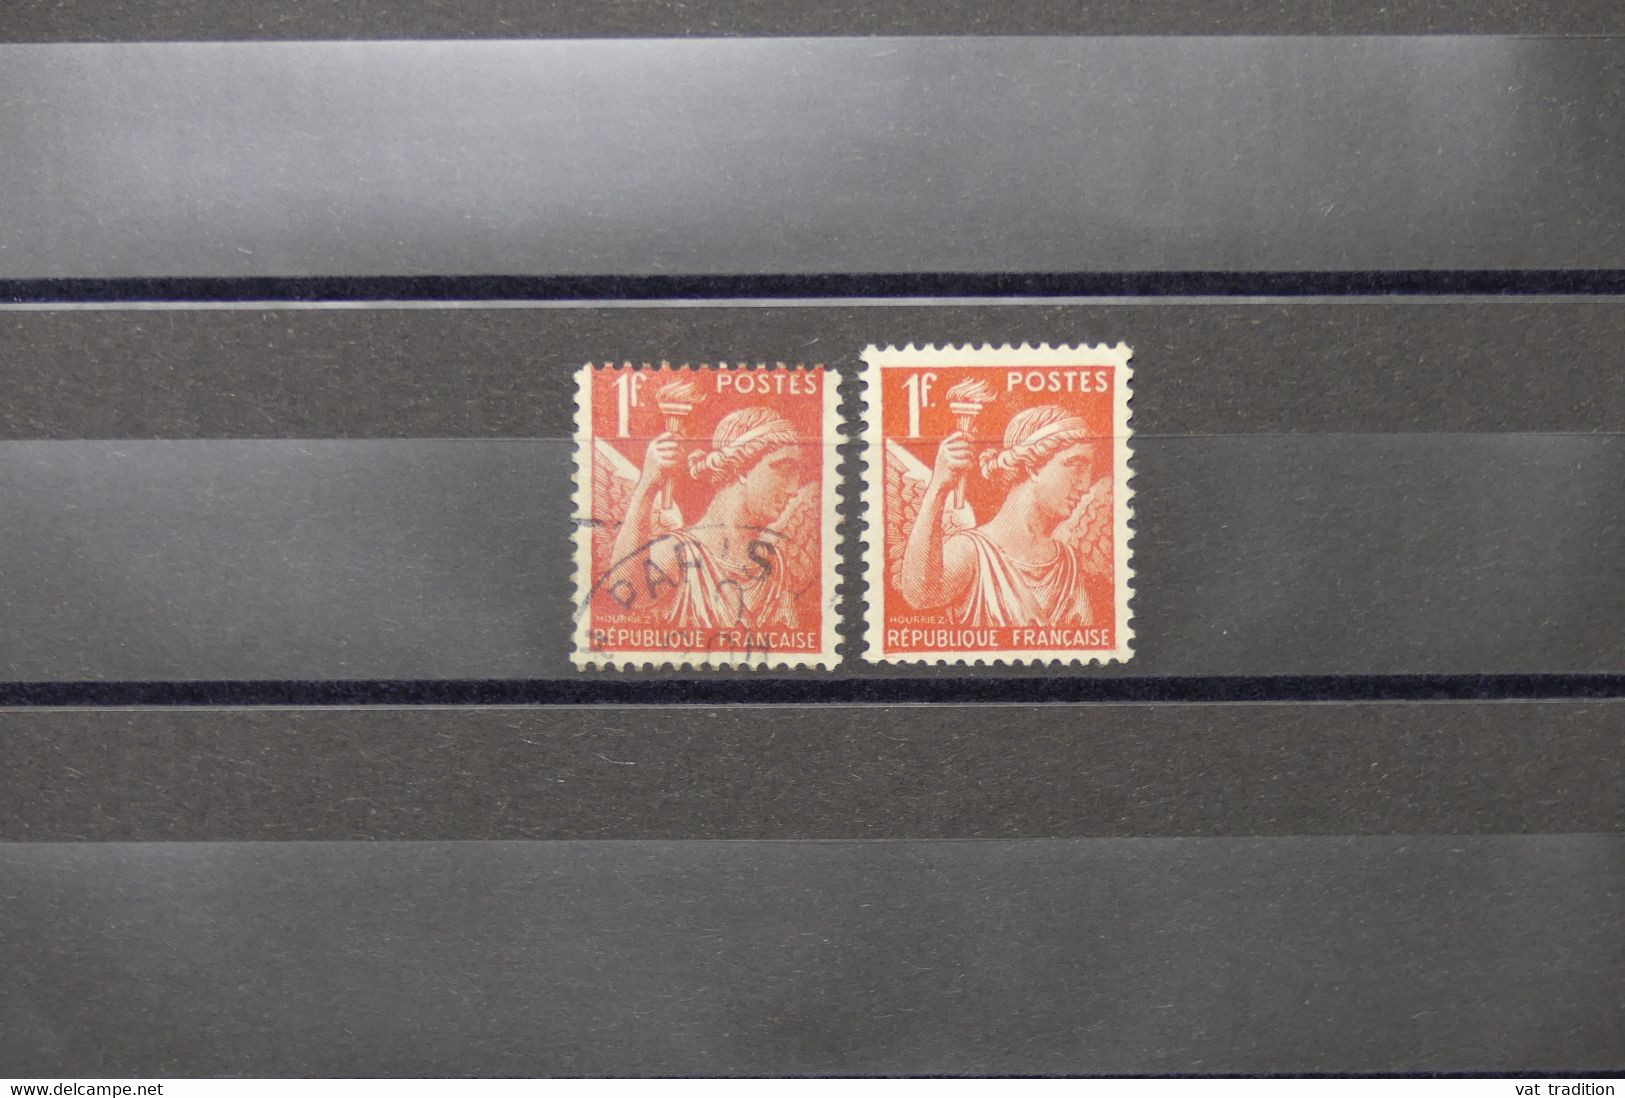 FRANCE - Variété - N° Yvert 433 - Type Iris - Timbre Plus Petit + Normal - Oblitérés - L 74053 - Used Stamps